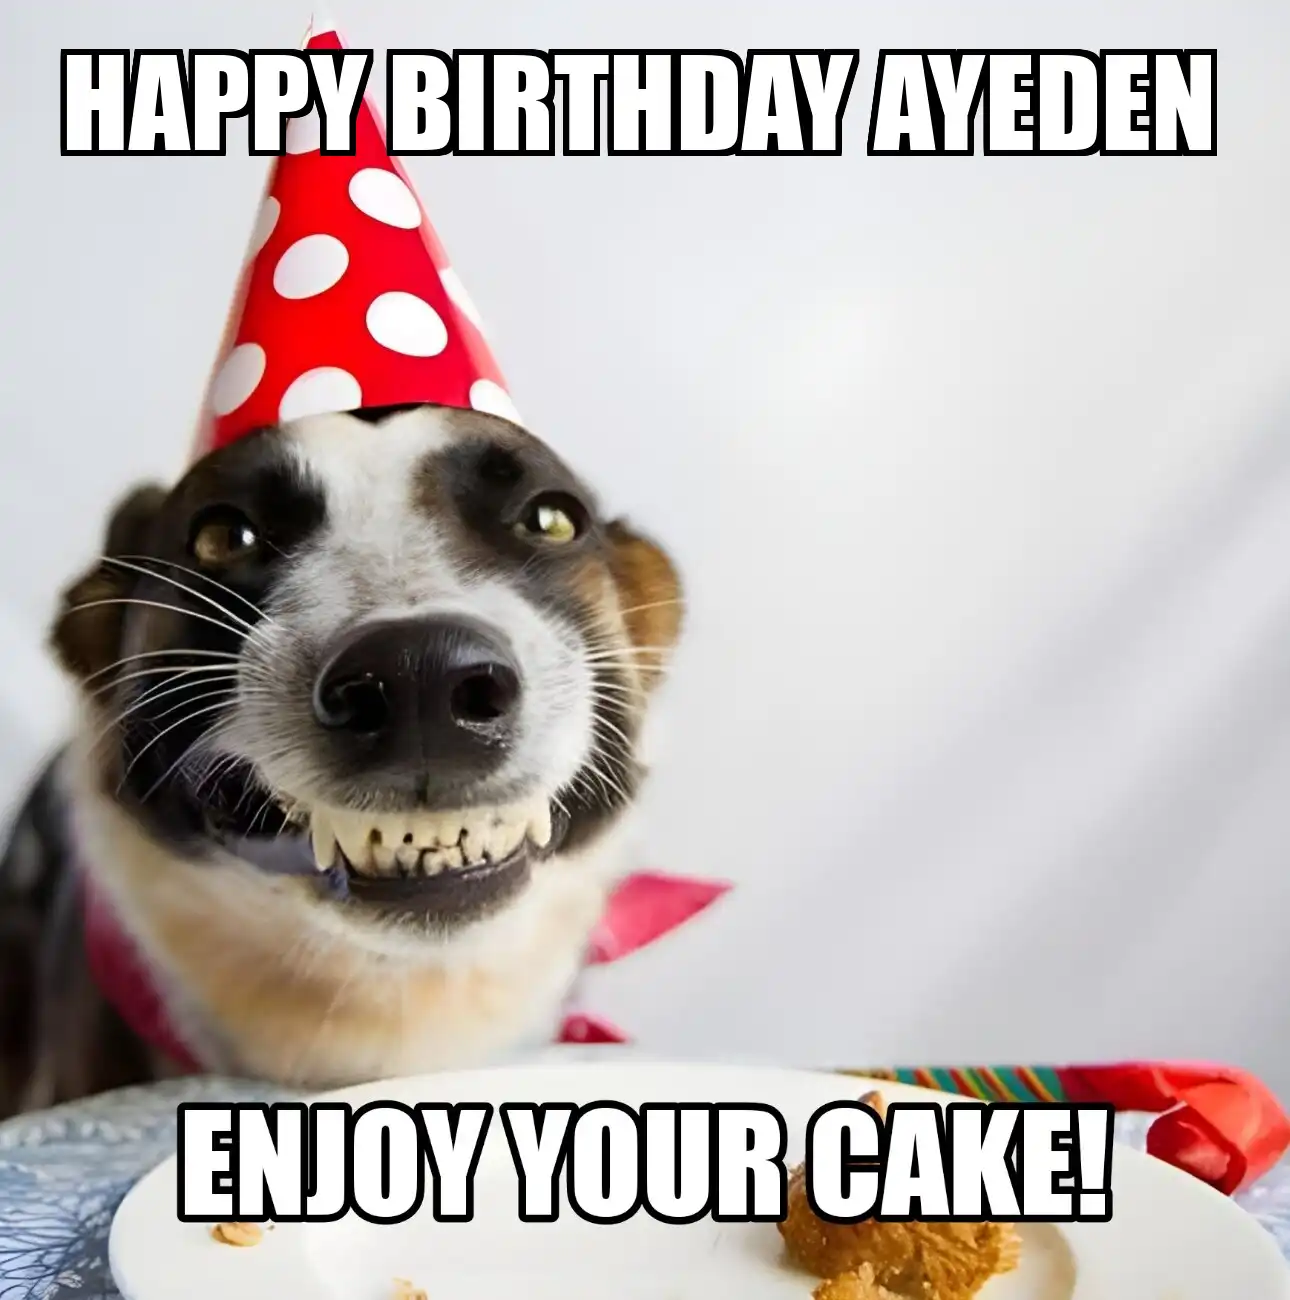 Happy Birthday Ayeden Enjoy Your Cake Dog Meme